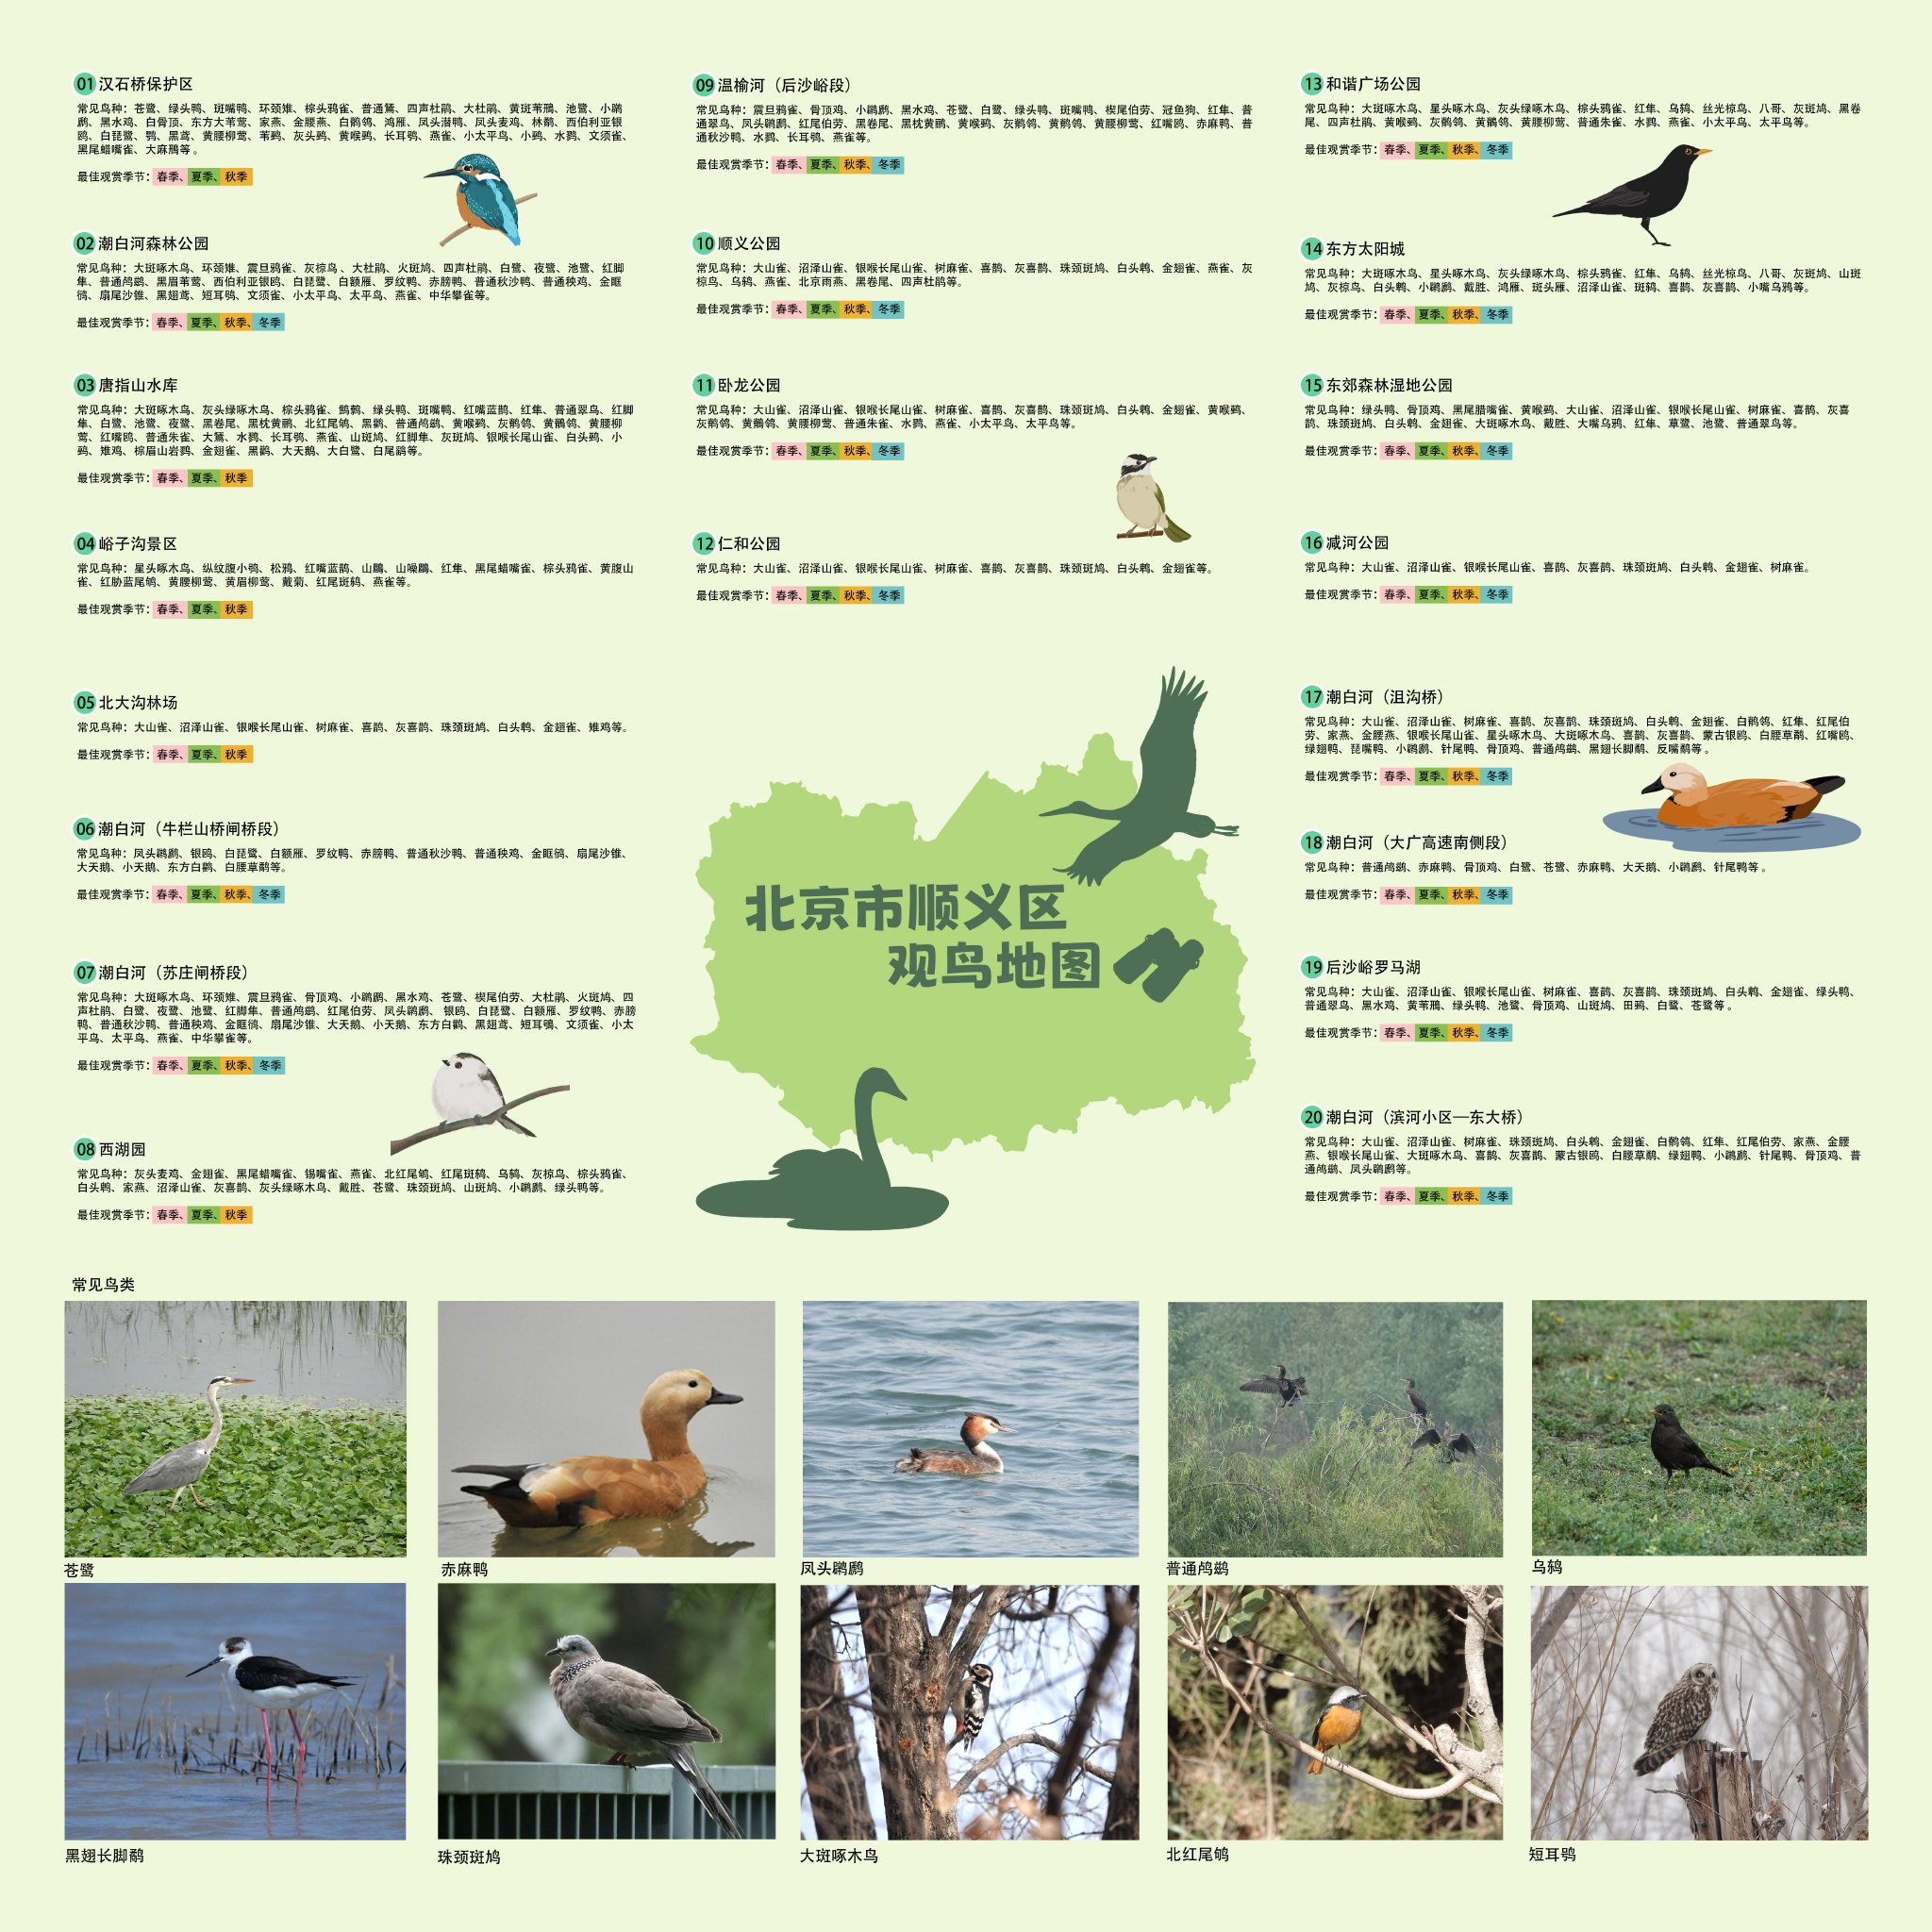 順義區發佈20處觀鳥點位地圖。順義區園林綠化局供圖